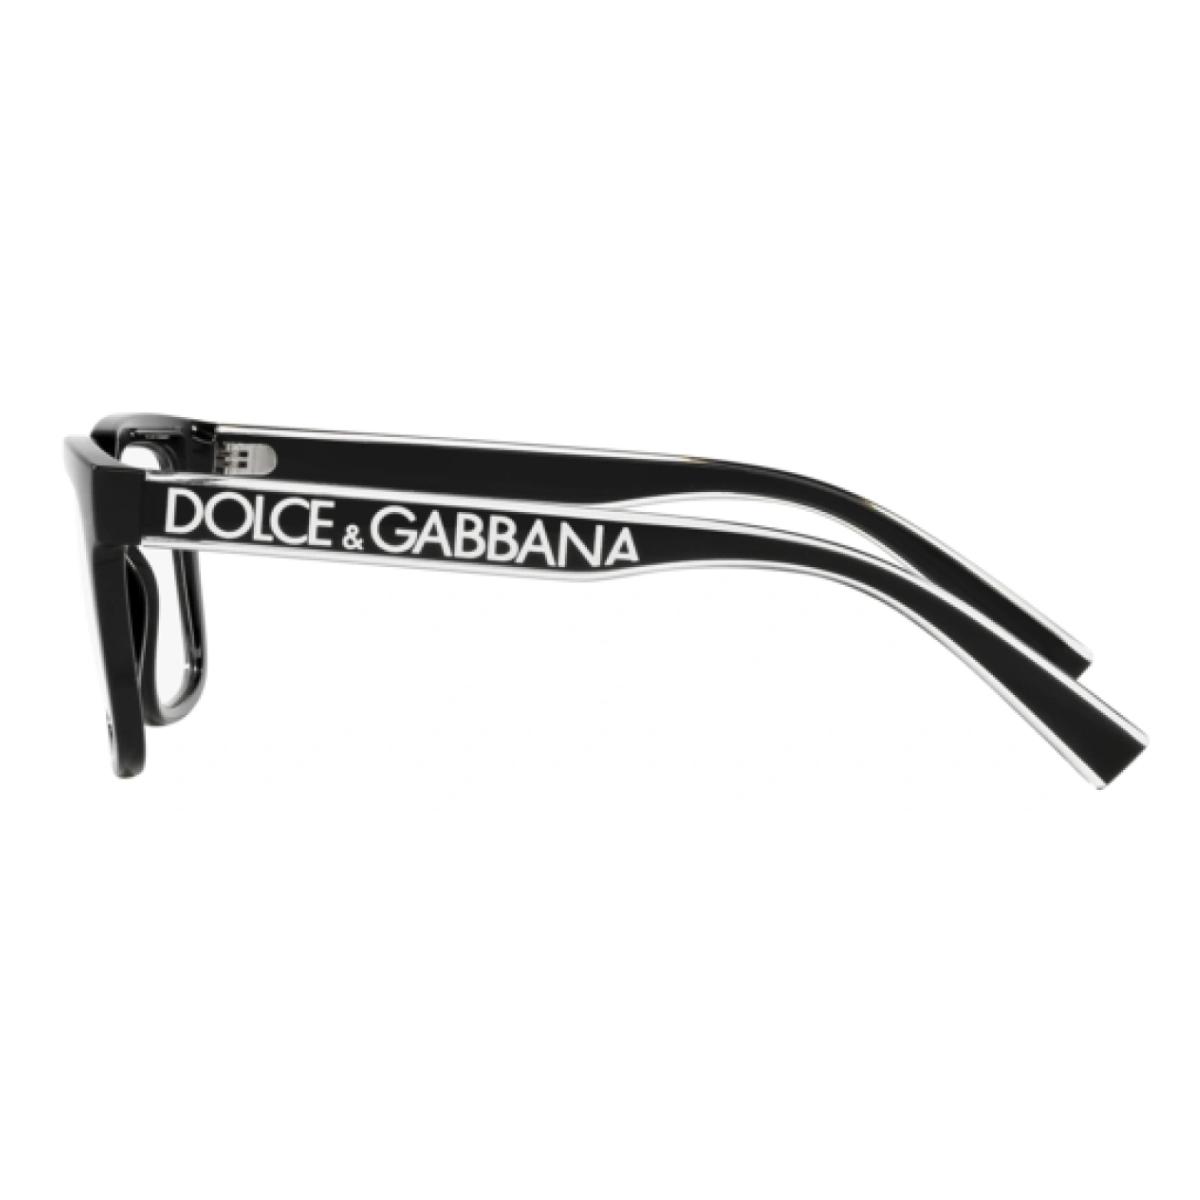 Dolce & Gabbana 5101 501 Frame